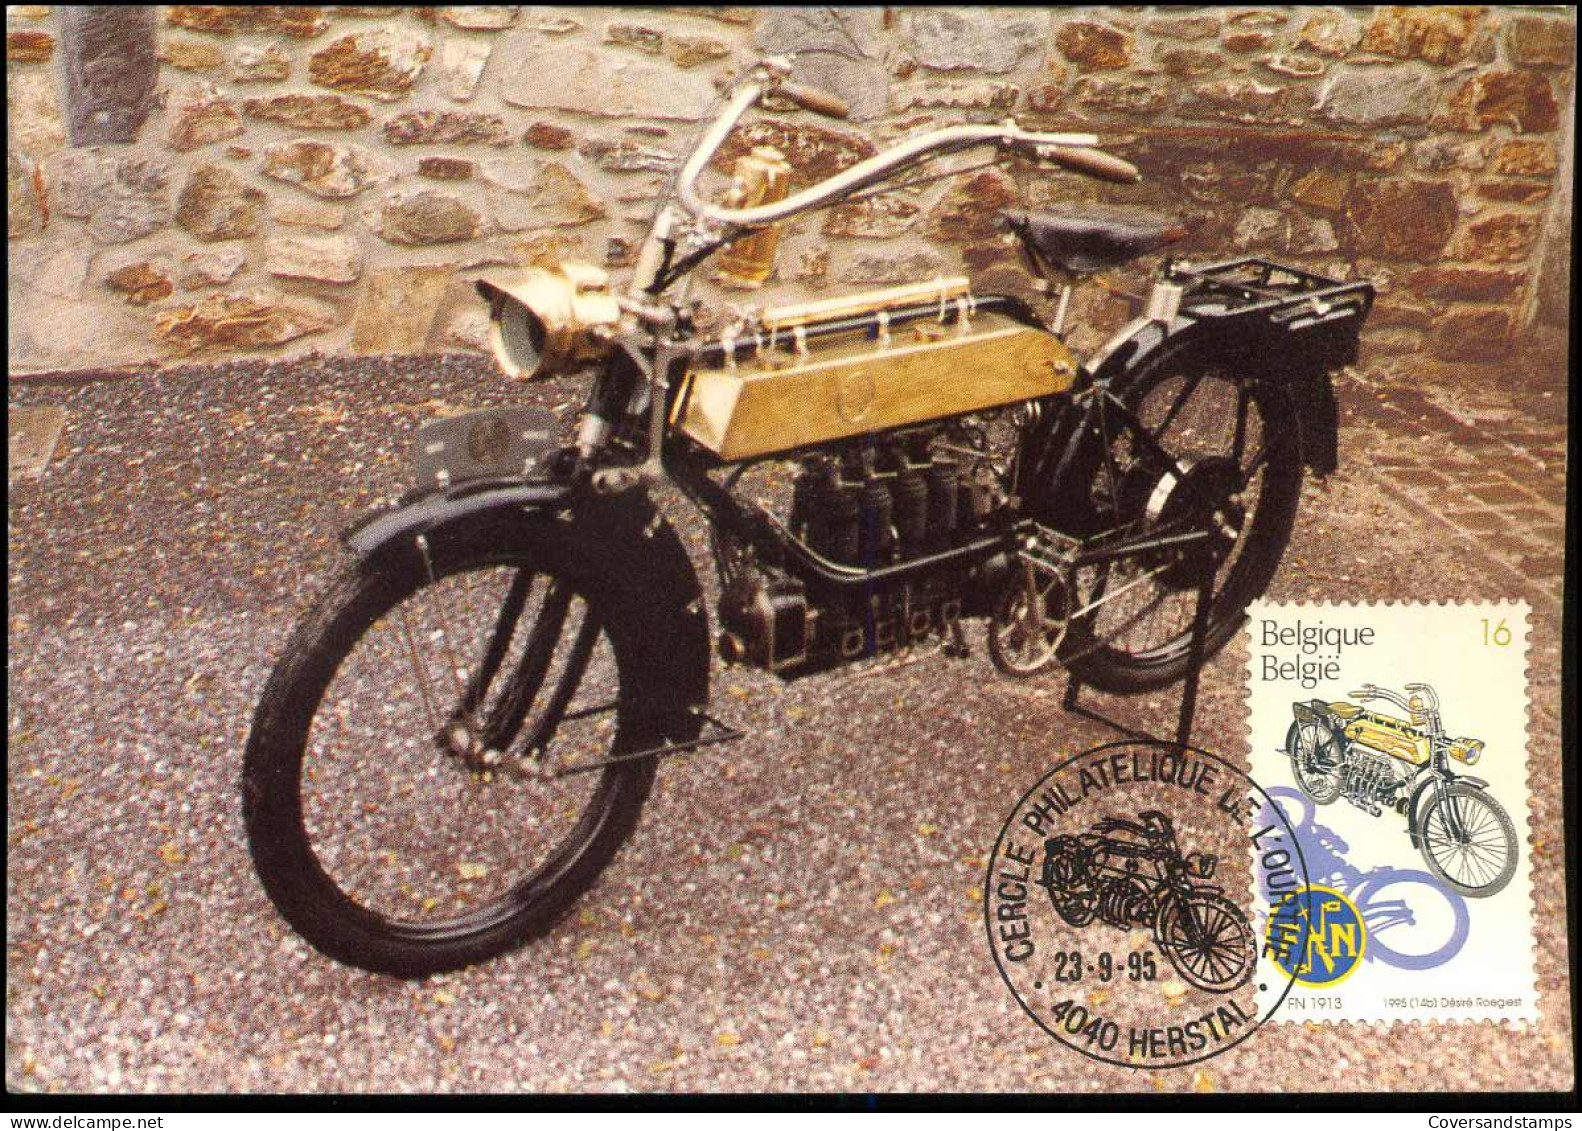 2616 - MK - Oude Belgische Moto's - FN 1913  - 1991-2000